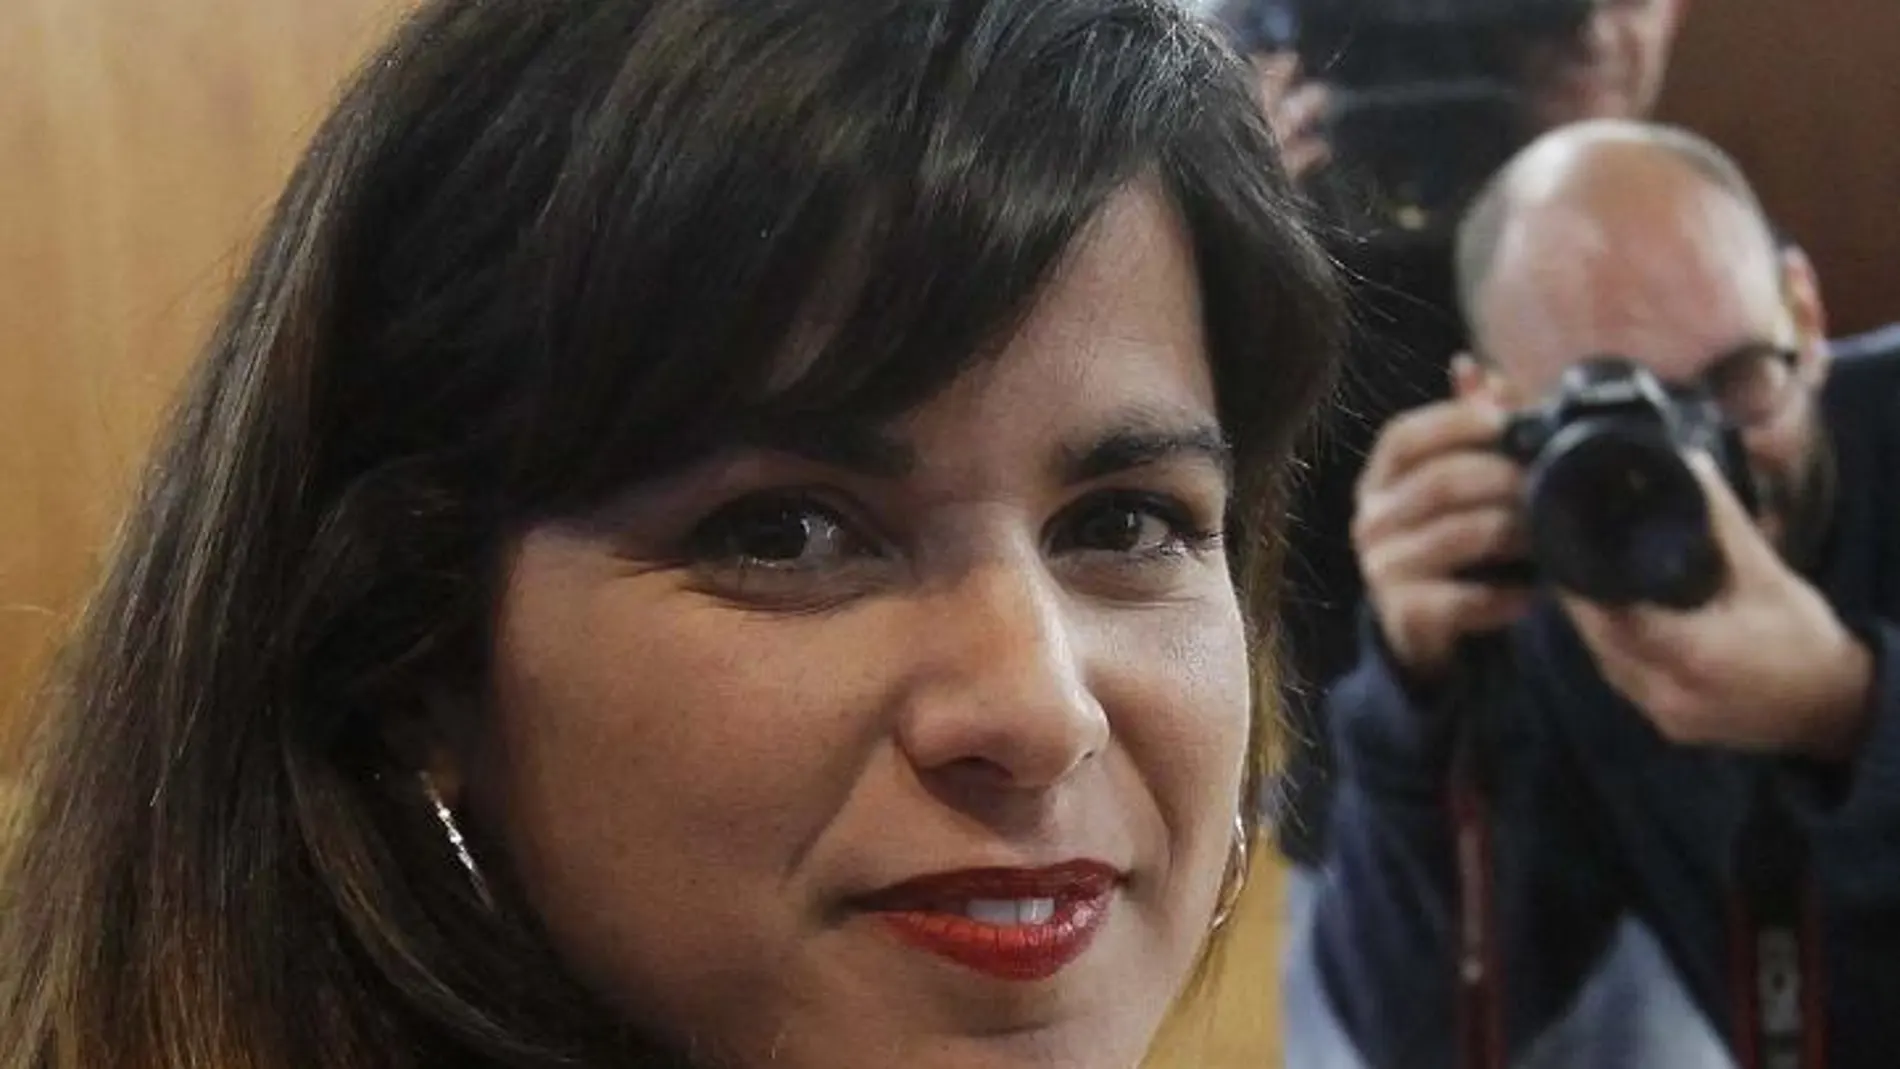 La líder de Podemos en Andalucía, Teresa Rodríguez